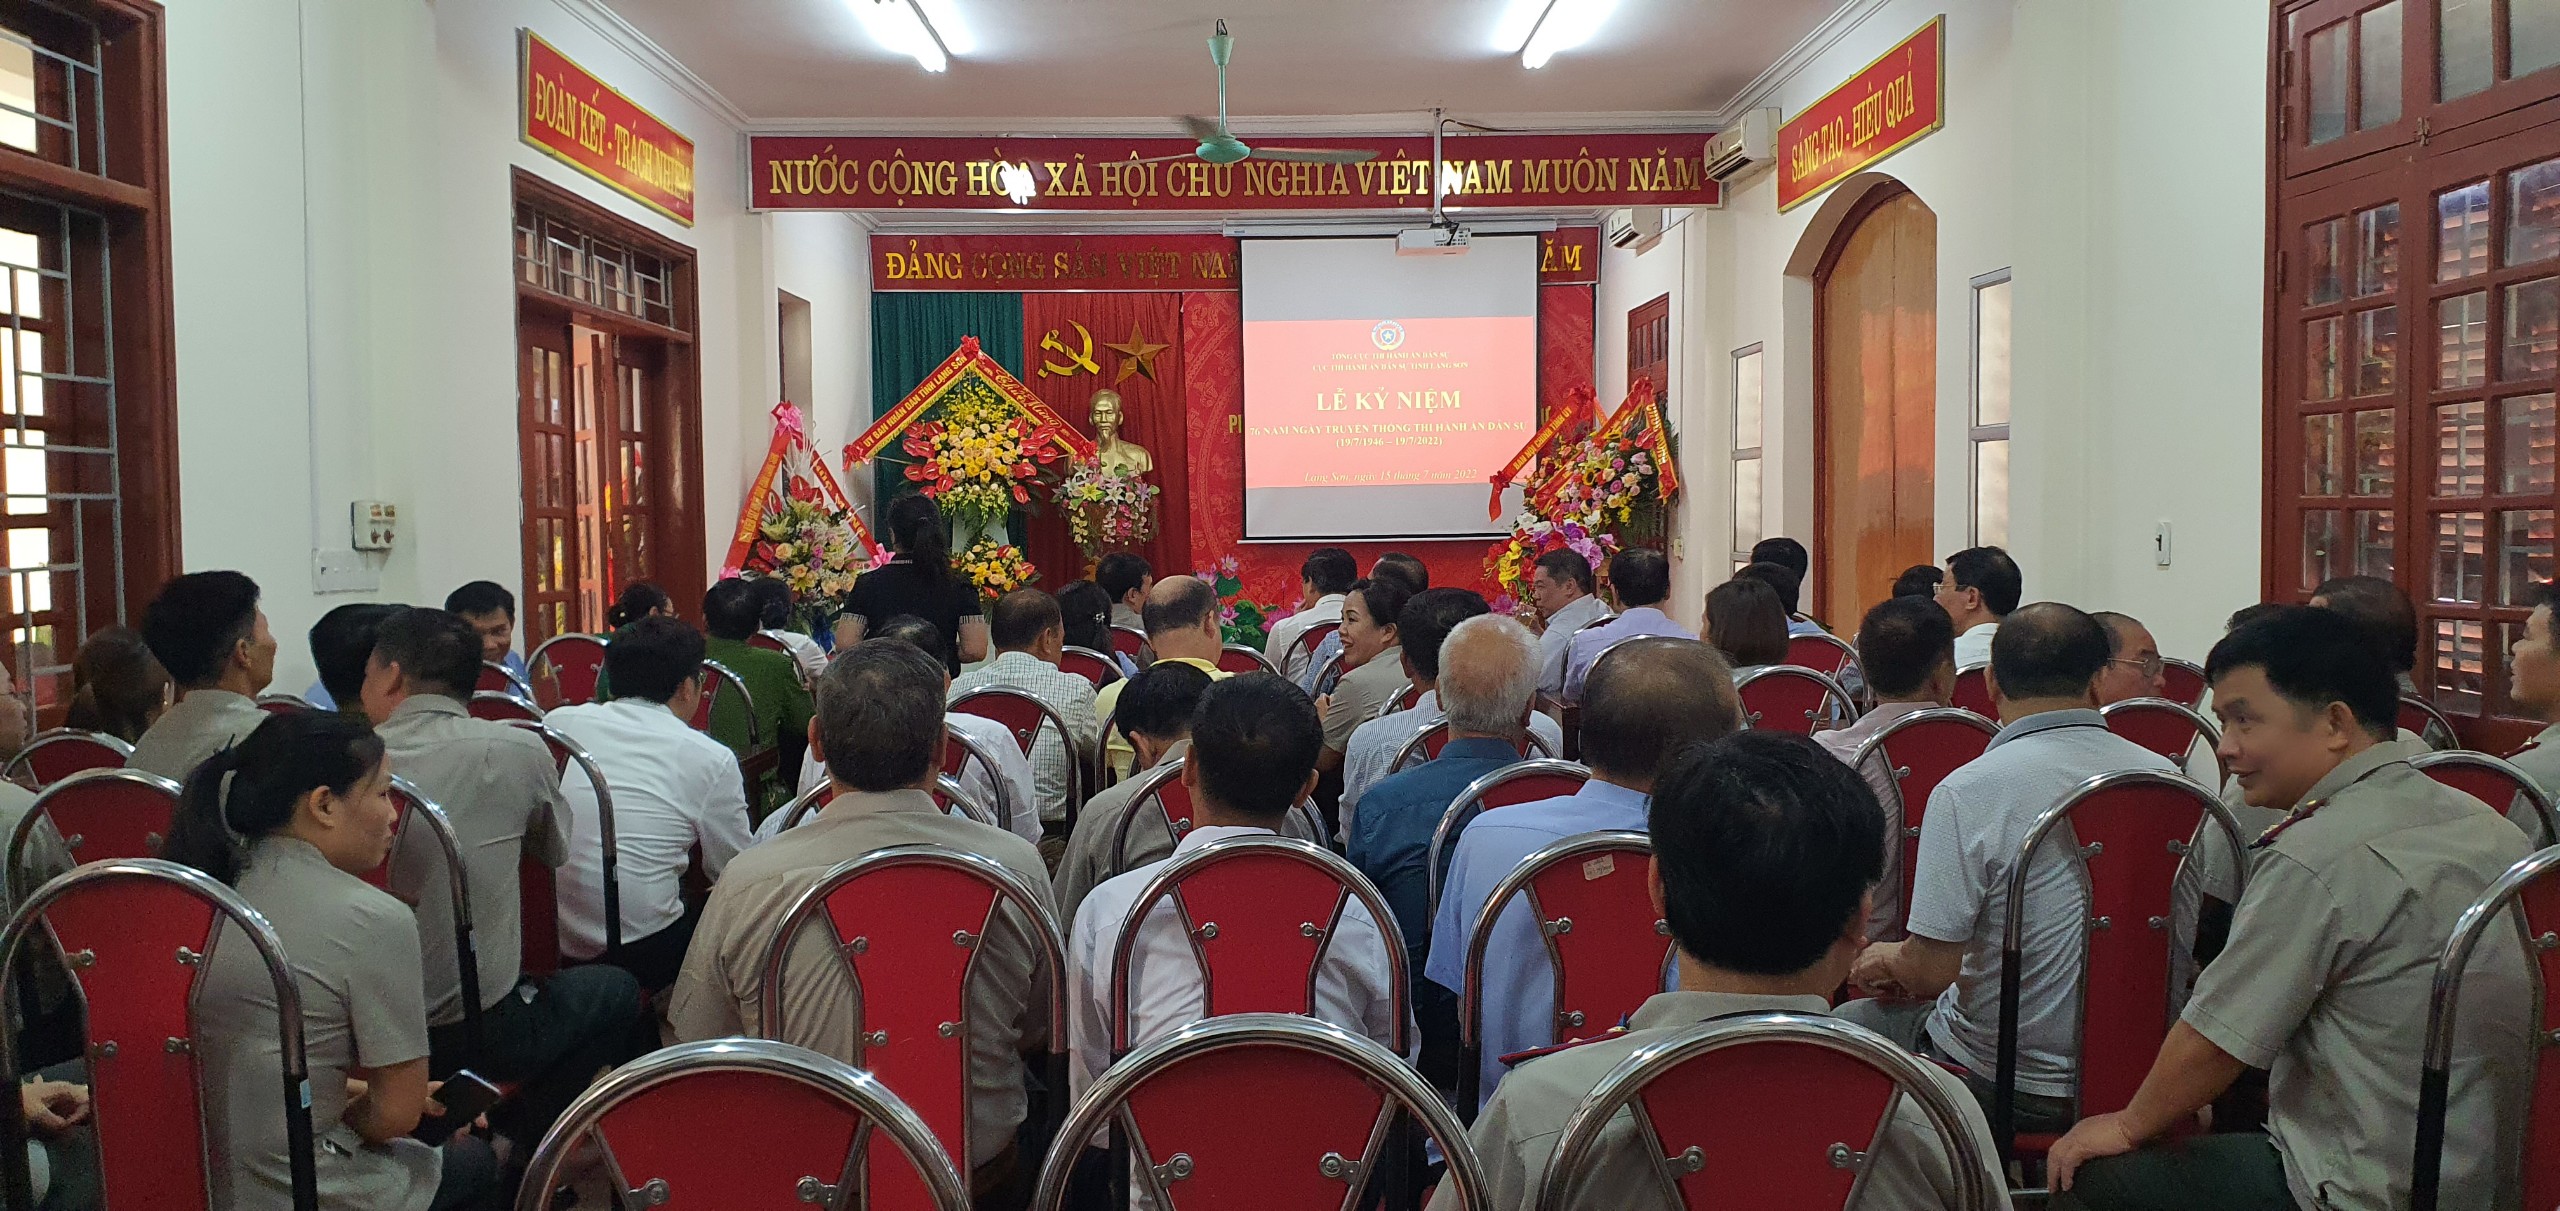 Lễ kỷ niệm 76 năm ngày truyền thống THADS (19/7/1946-19/7/2022) và khánh thành phòng truyền thống của các cơ quan THADS trên địa bàn tỉnh Lạng Sơn